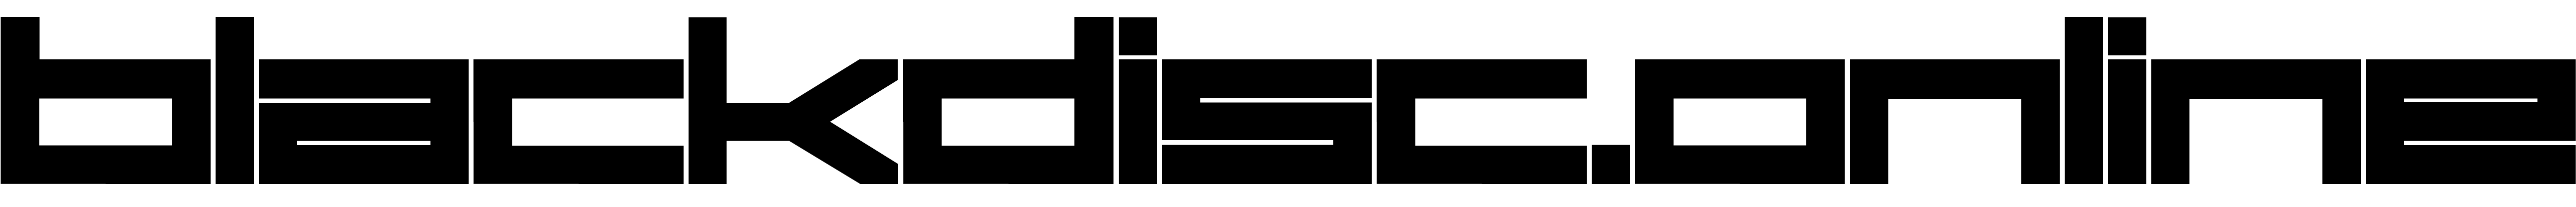 blackdisc logo